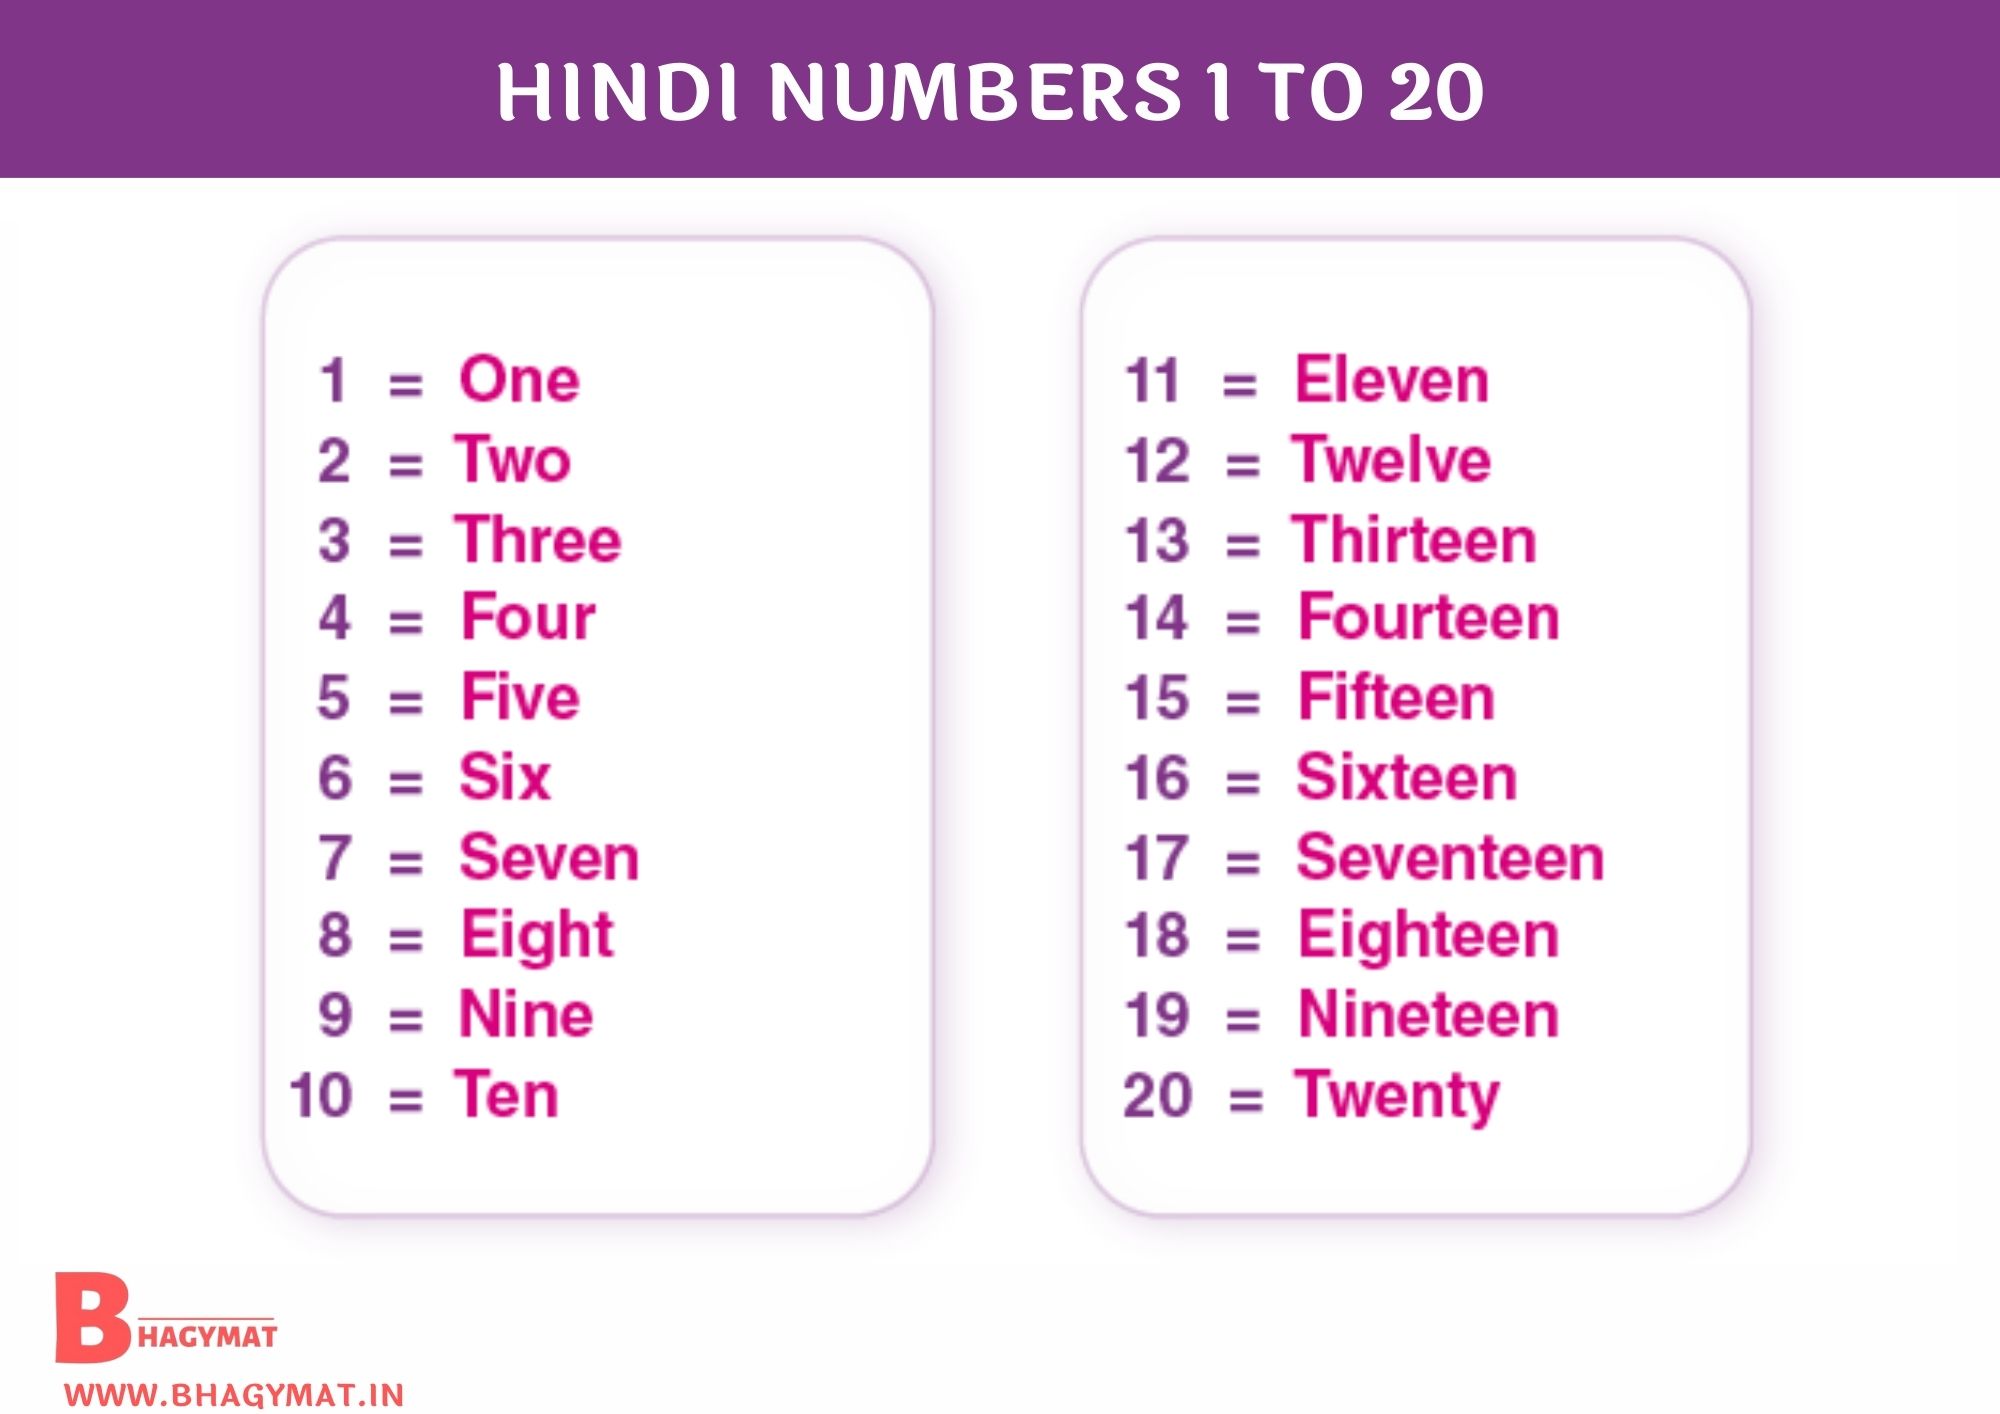 हिंदी नंबर्स 1 से 20 तक (Hindi Numbers 1-20) - Numbers Hindi 1 To 20 - Hindi Numbers 1 To 20